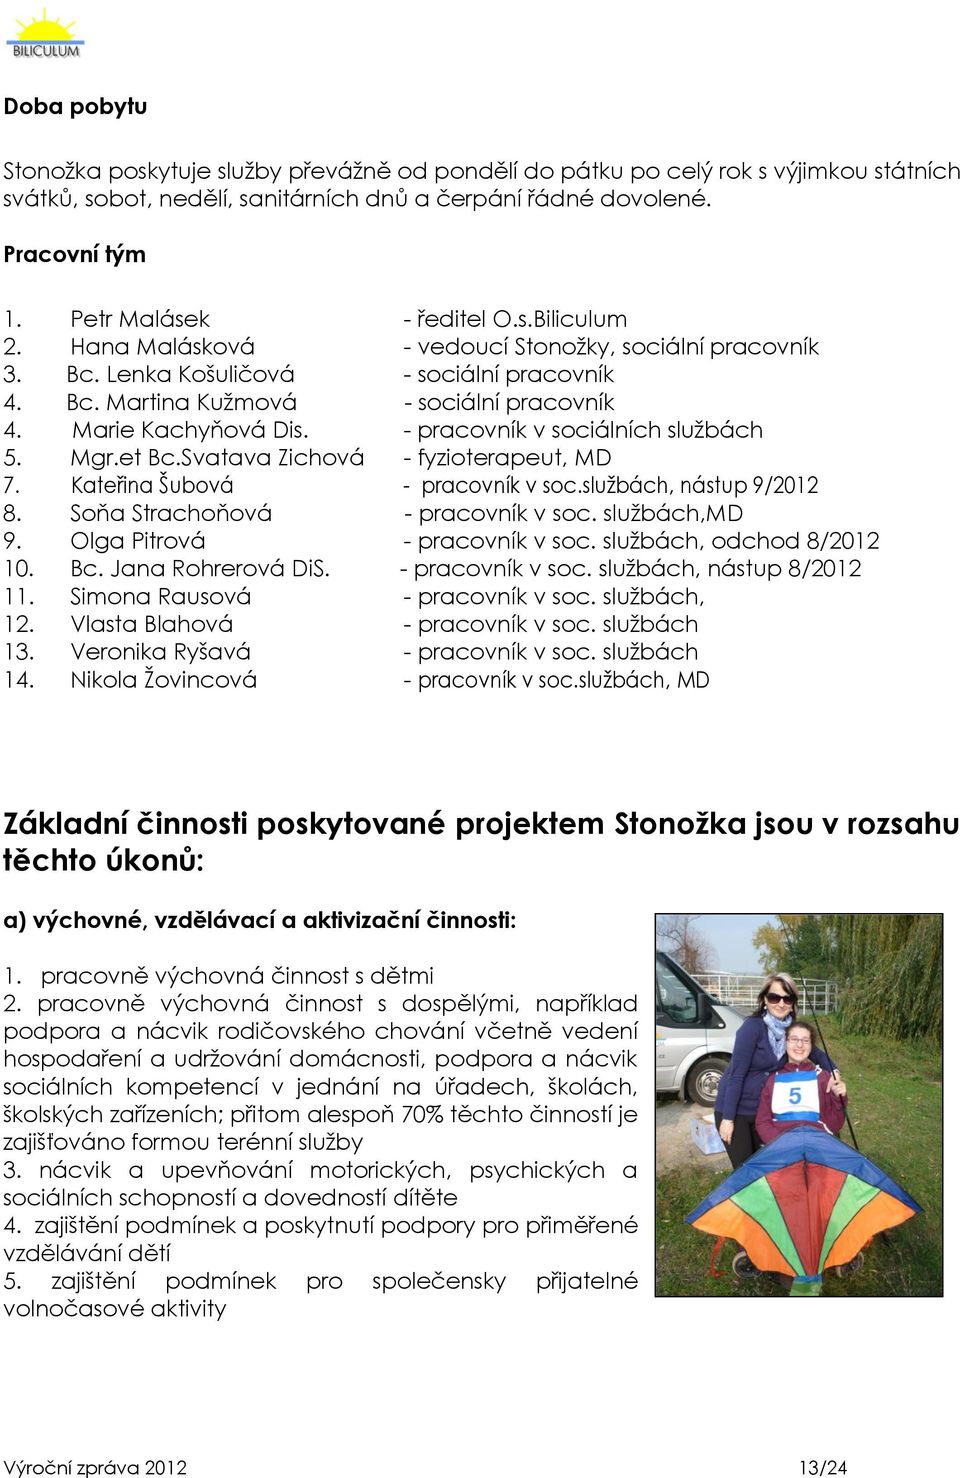 Marie Kachyňová Dis. - pracovník v sociálních sluţbách 5. Mgr.et Bc.Svatava Zichová - fyzioterapeut, MD 7. Kateřina Šubová - pracovník v soc.sluţbách, nástup 9/2012 8.